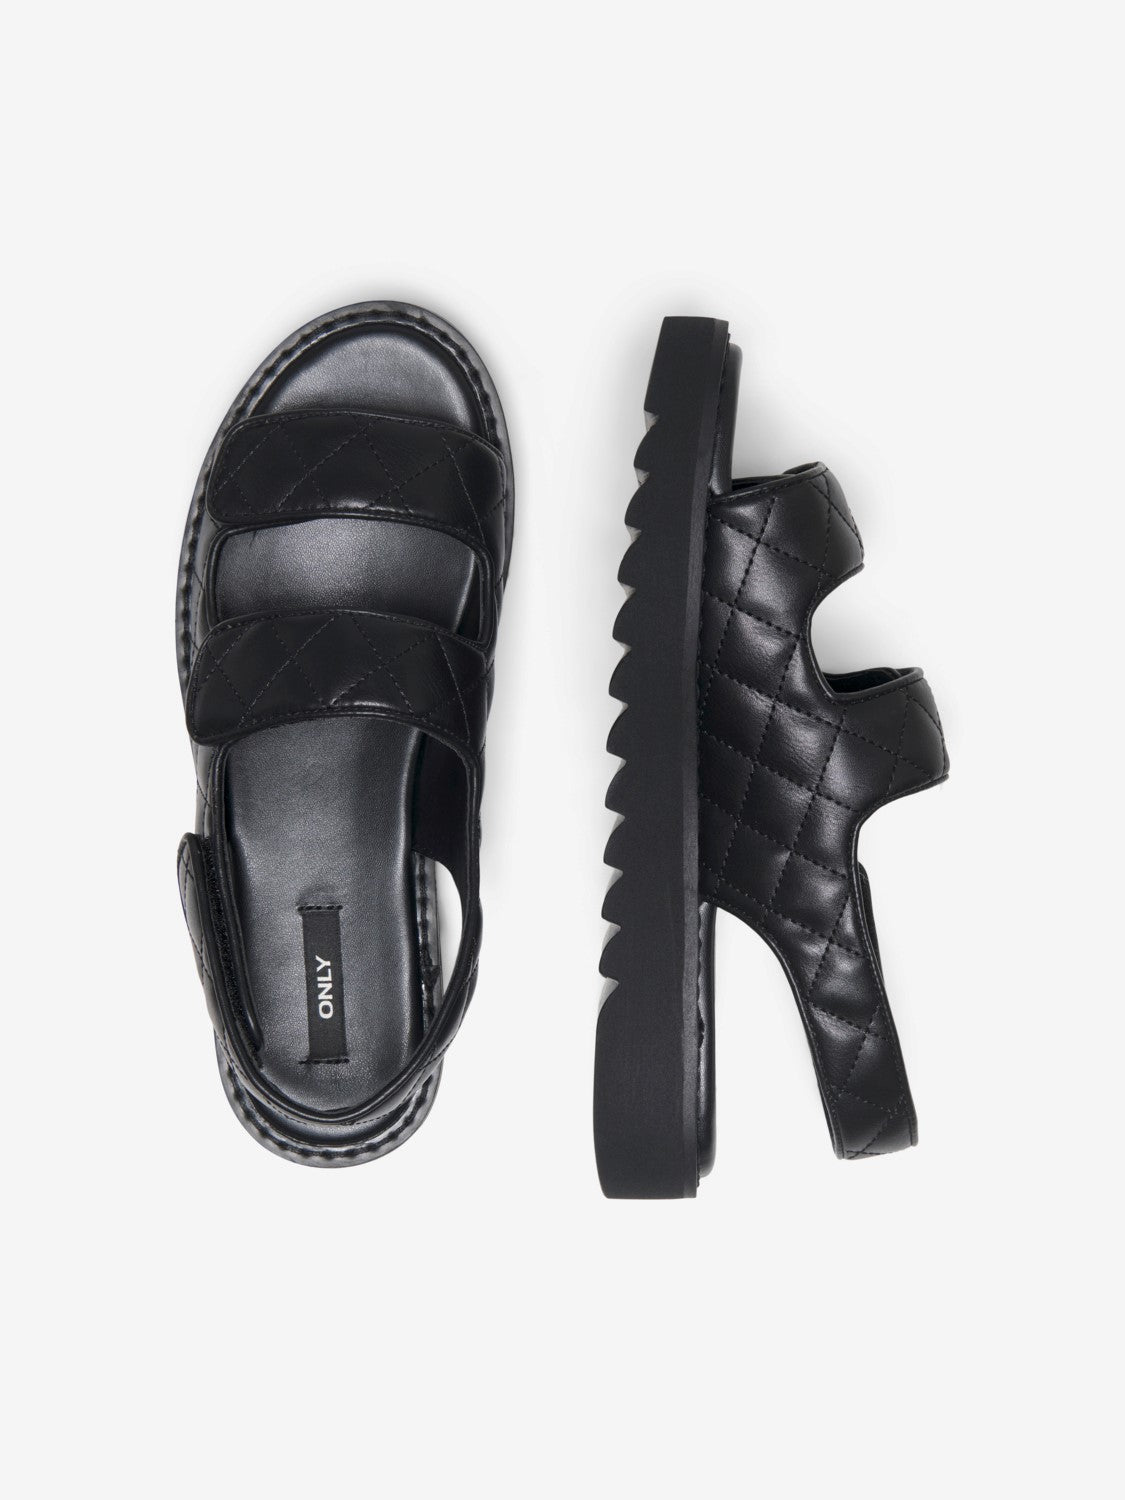 Chunky quiltet sandal black